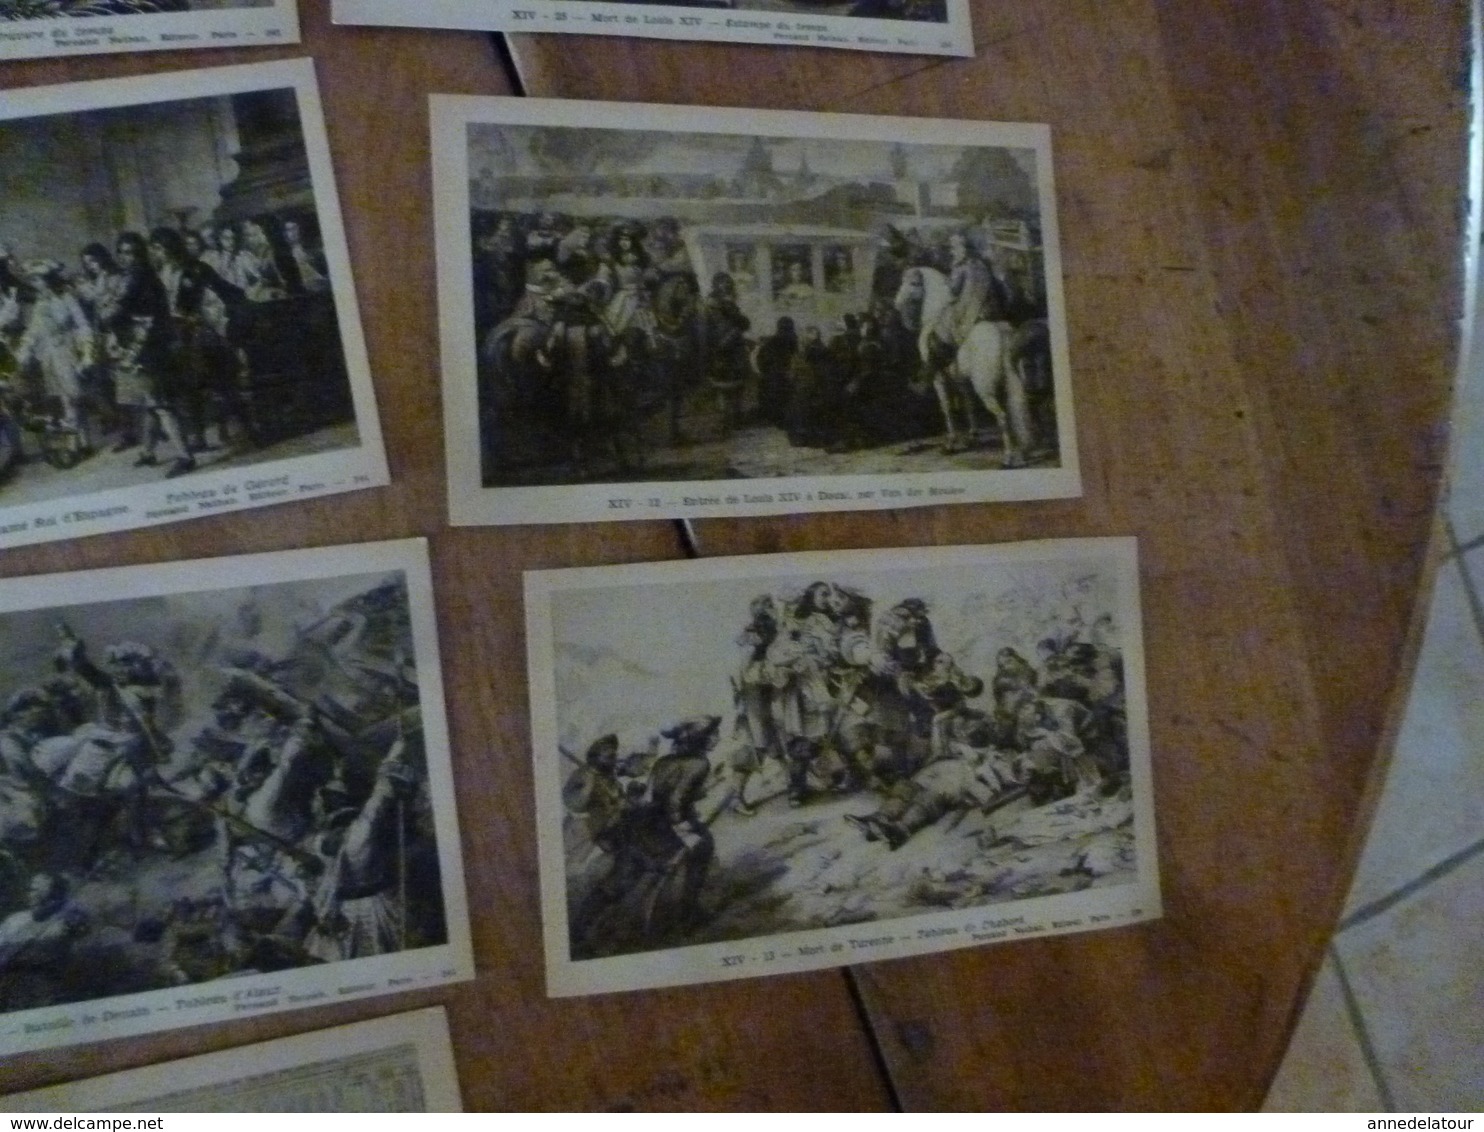 Lot de 19 Cartes Postales -->pour connaitre notre Histoire :LE REGNE DE LOUIS XIV  , par Alfred Carlier